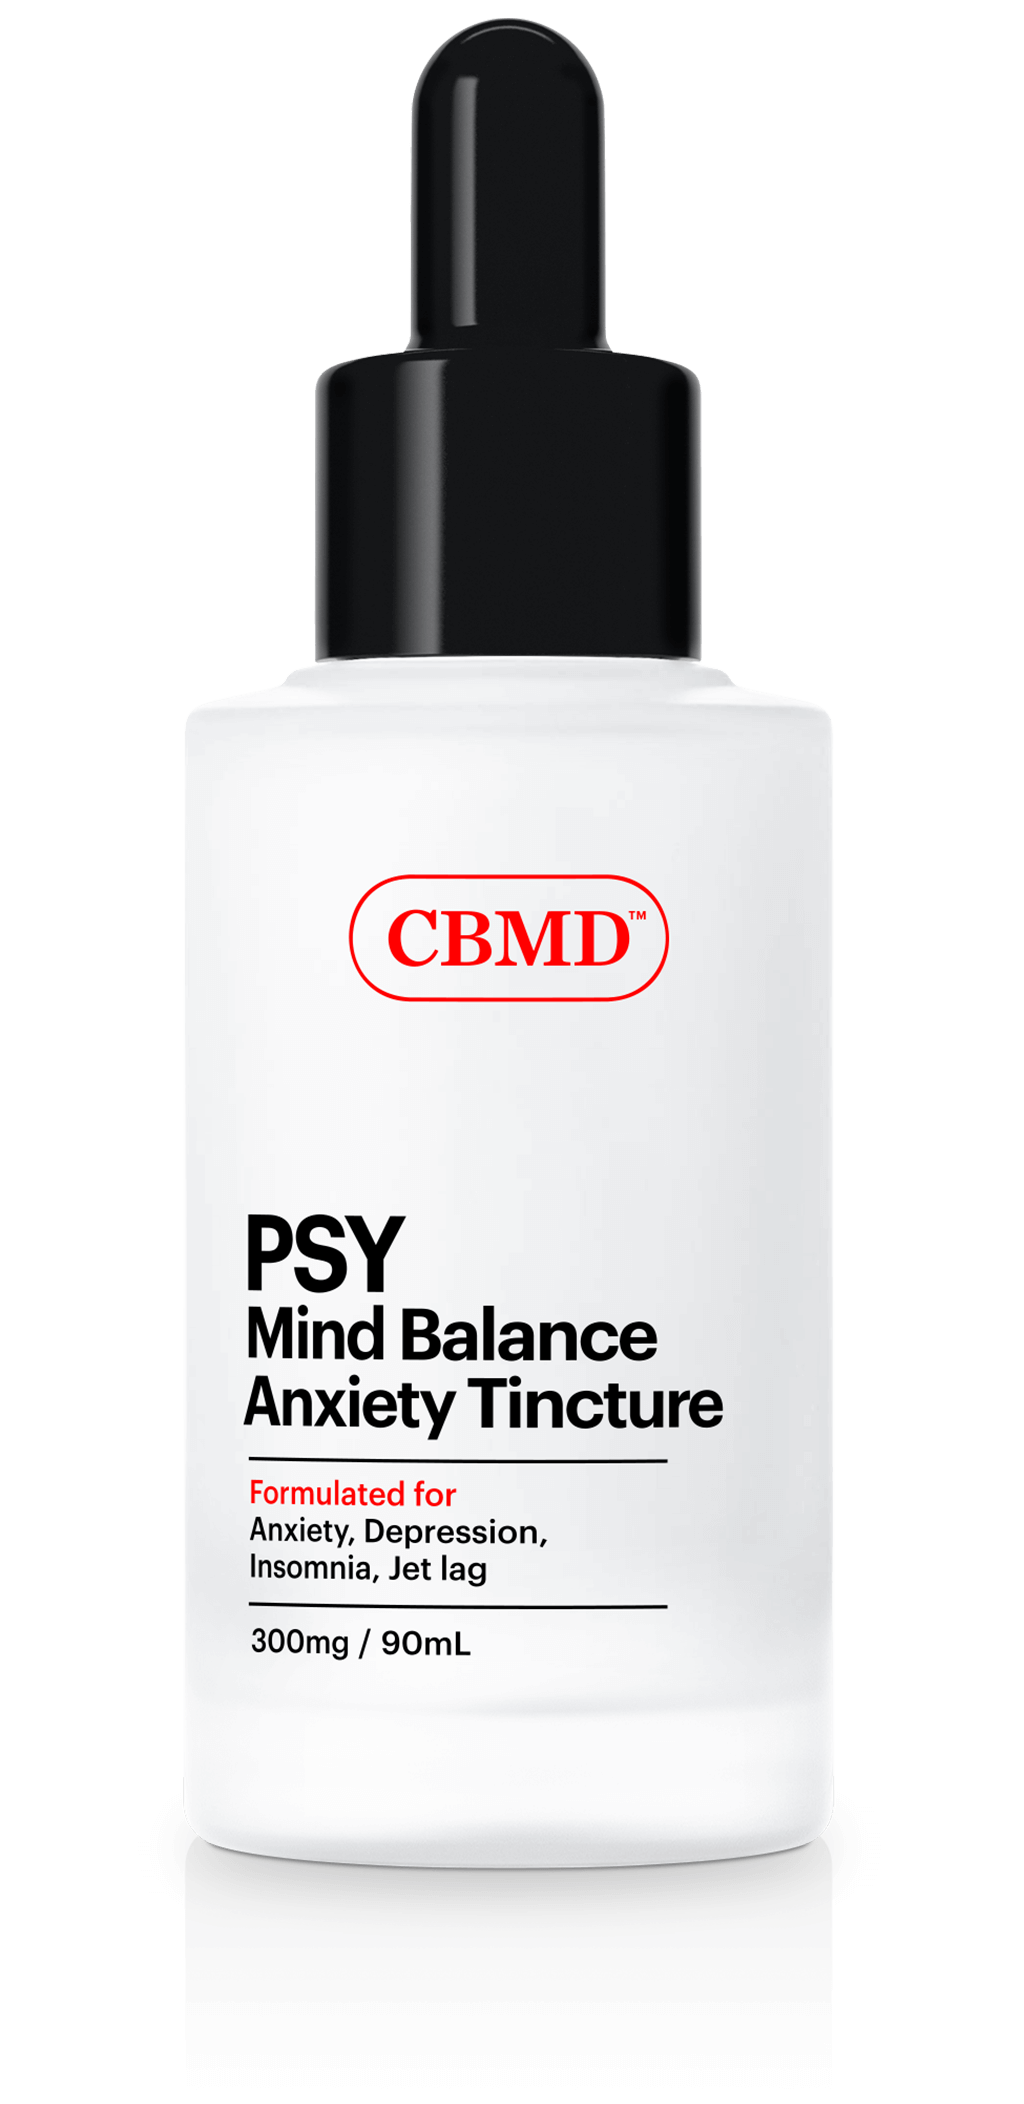 PSY Mind Balance CBD Anxiety Tincture